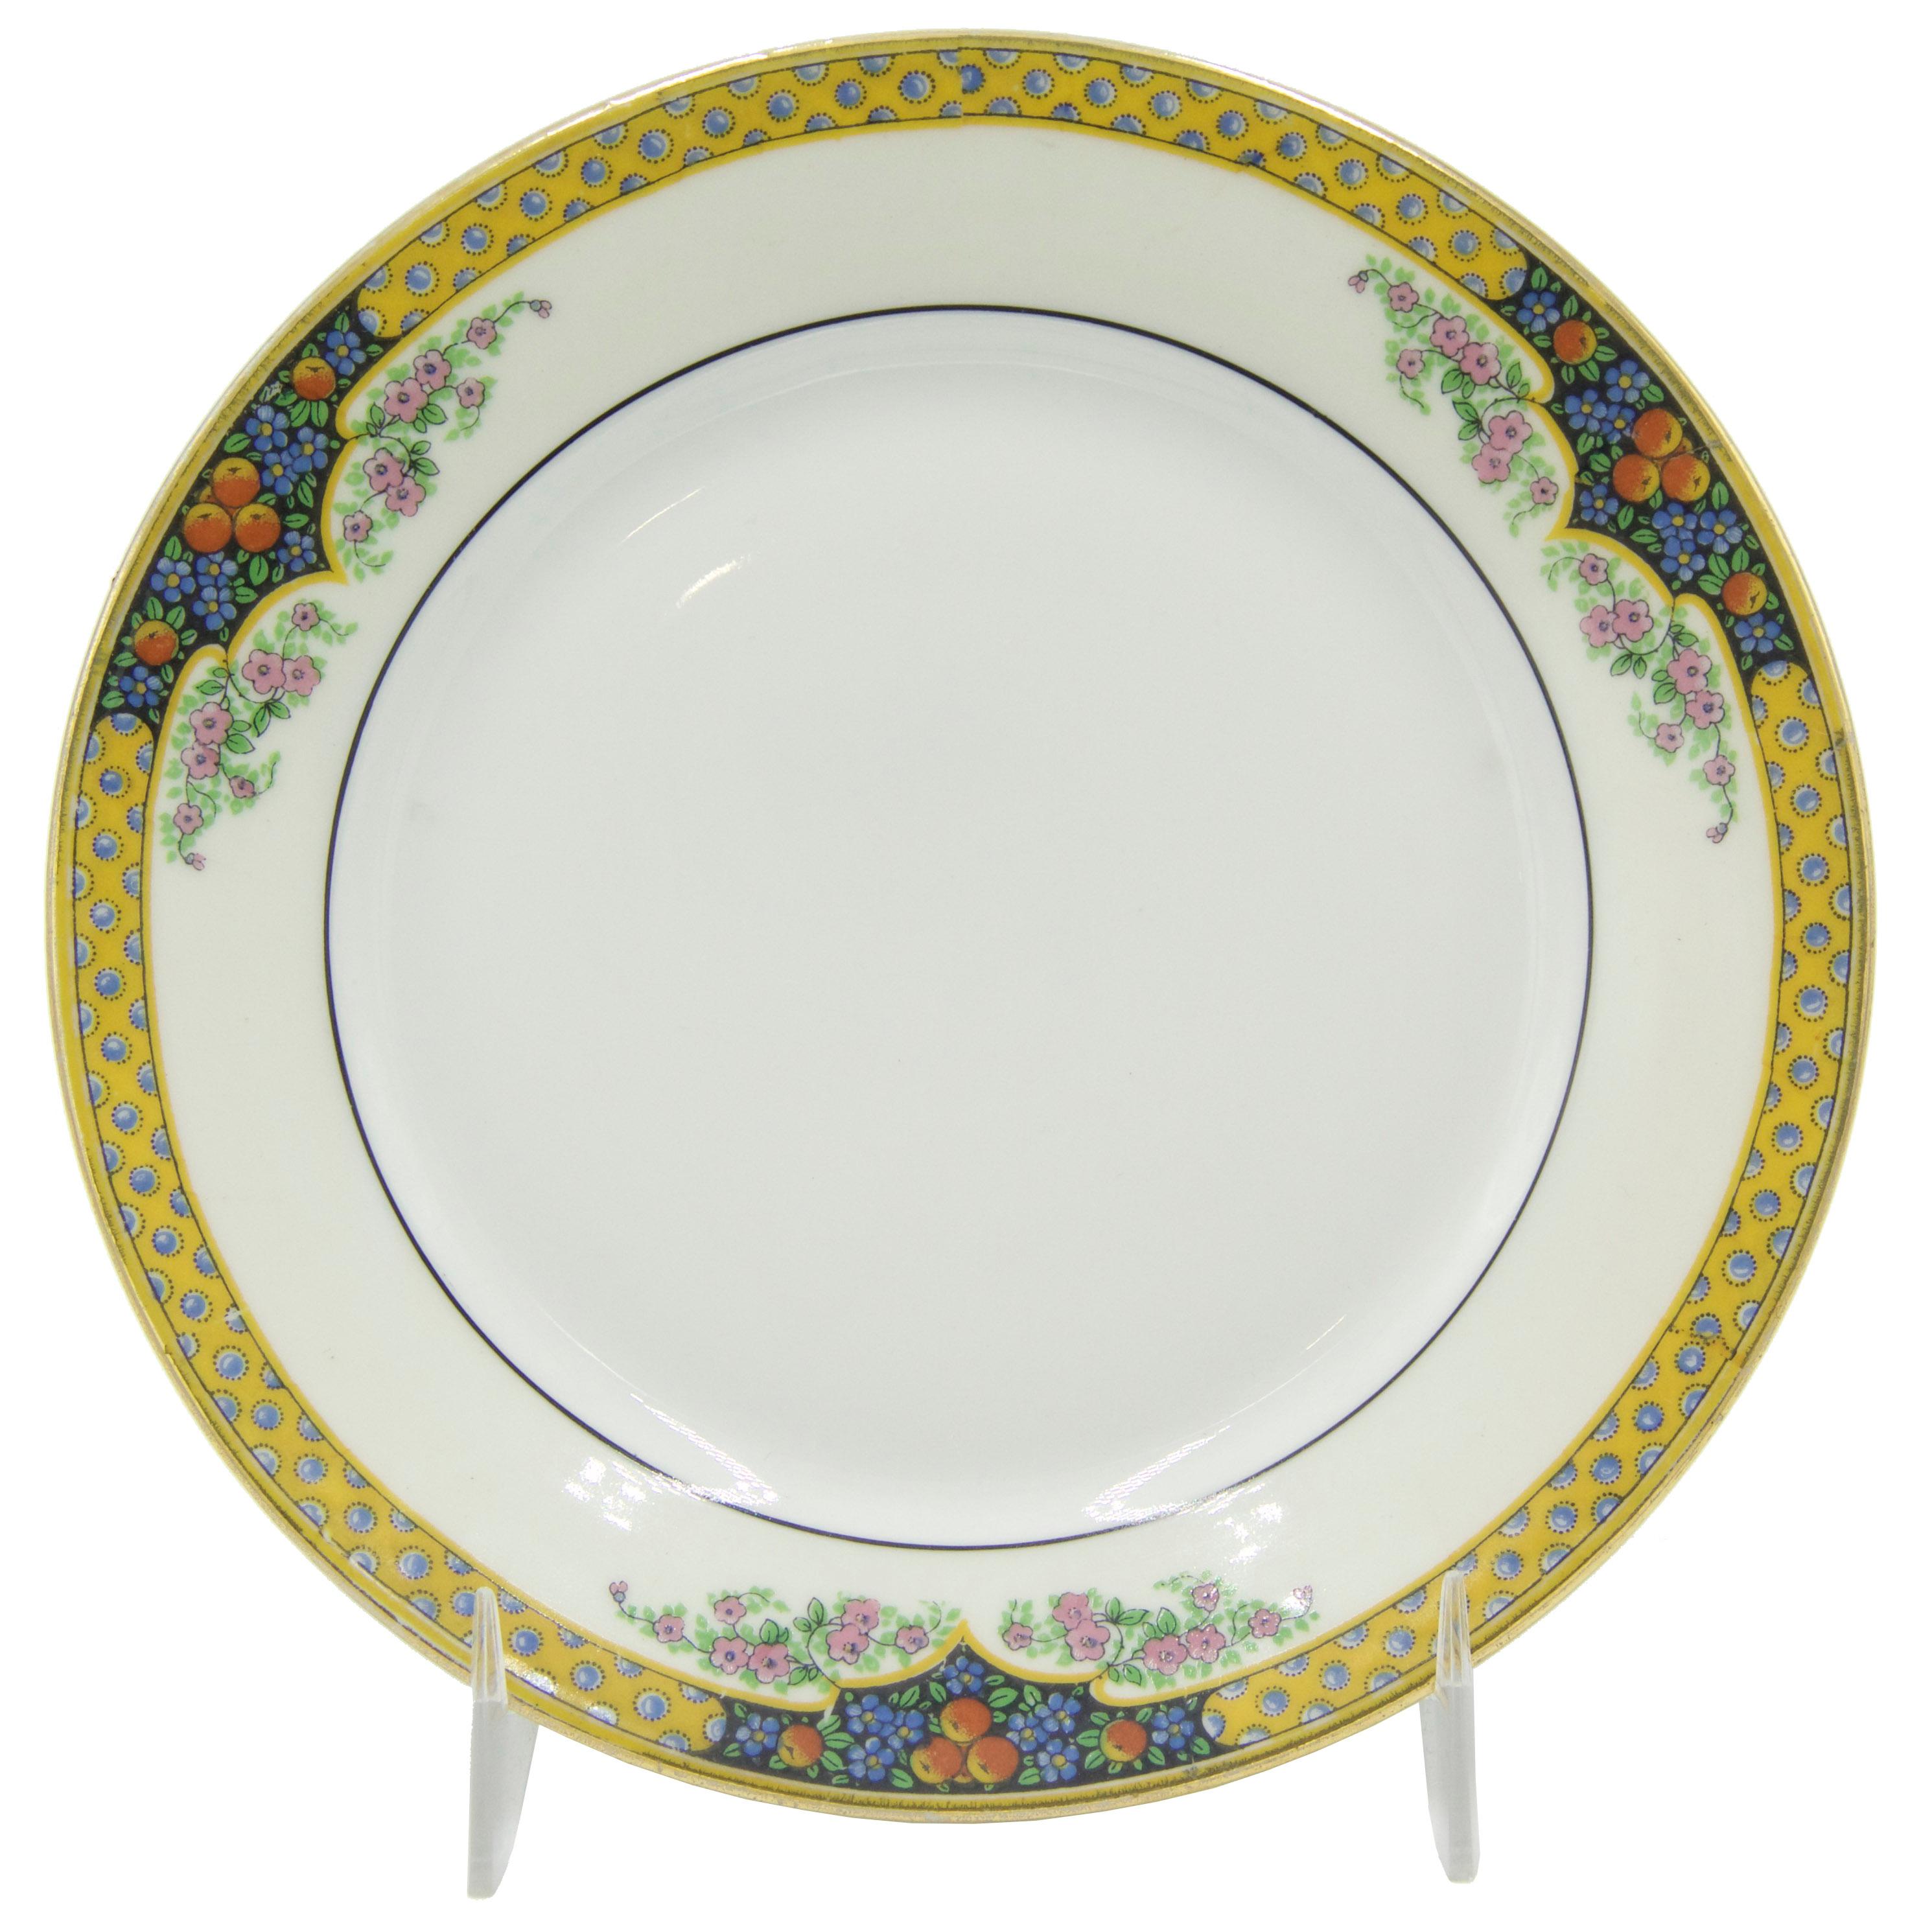 Service de table de 36 pièces en porcelaine de Limoges de l'époque victorienne avec bordure jaune et garniture florale (PRIX DU SET).
 